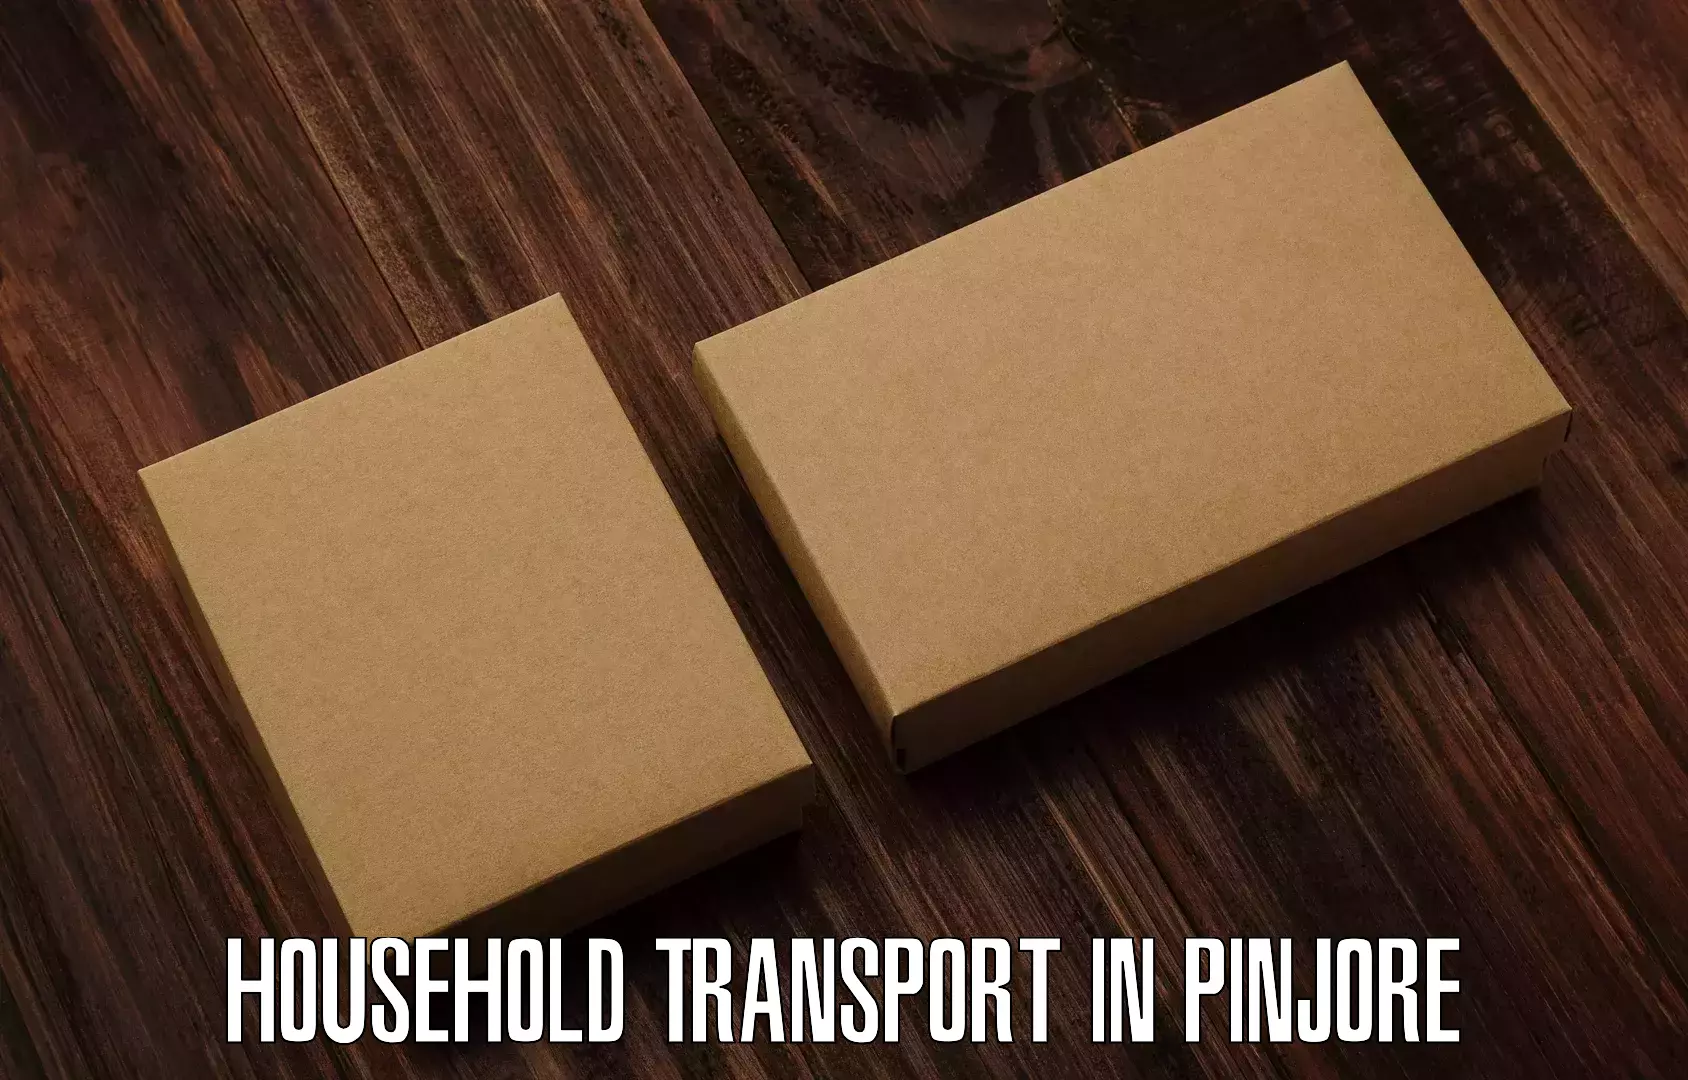 Household goods transport in Pinjore